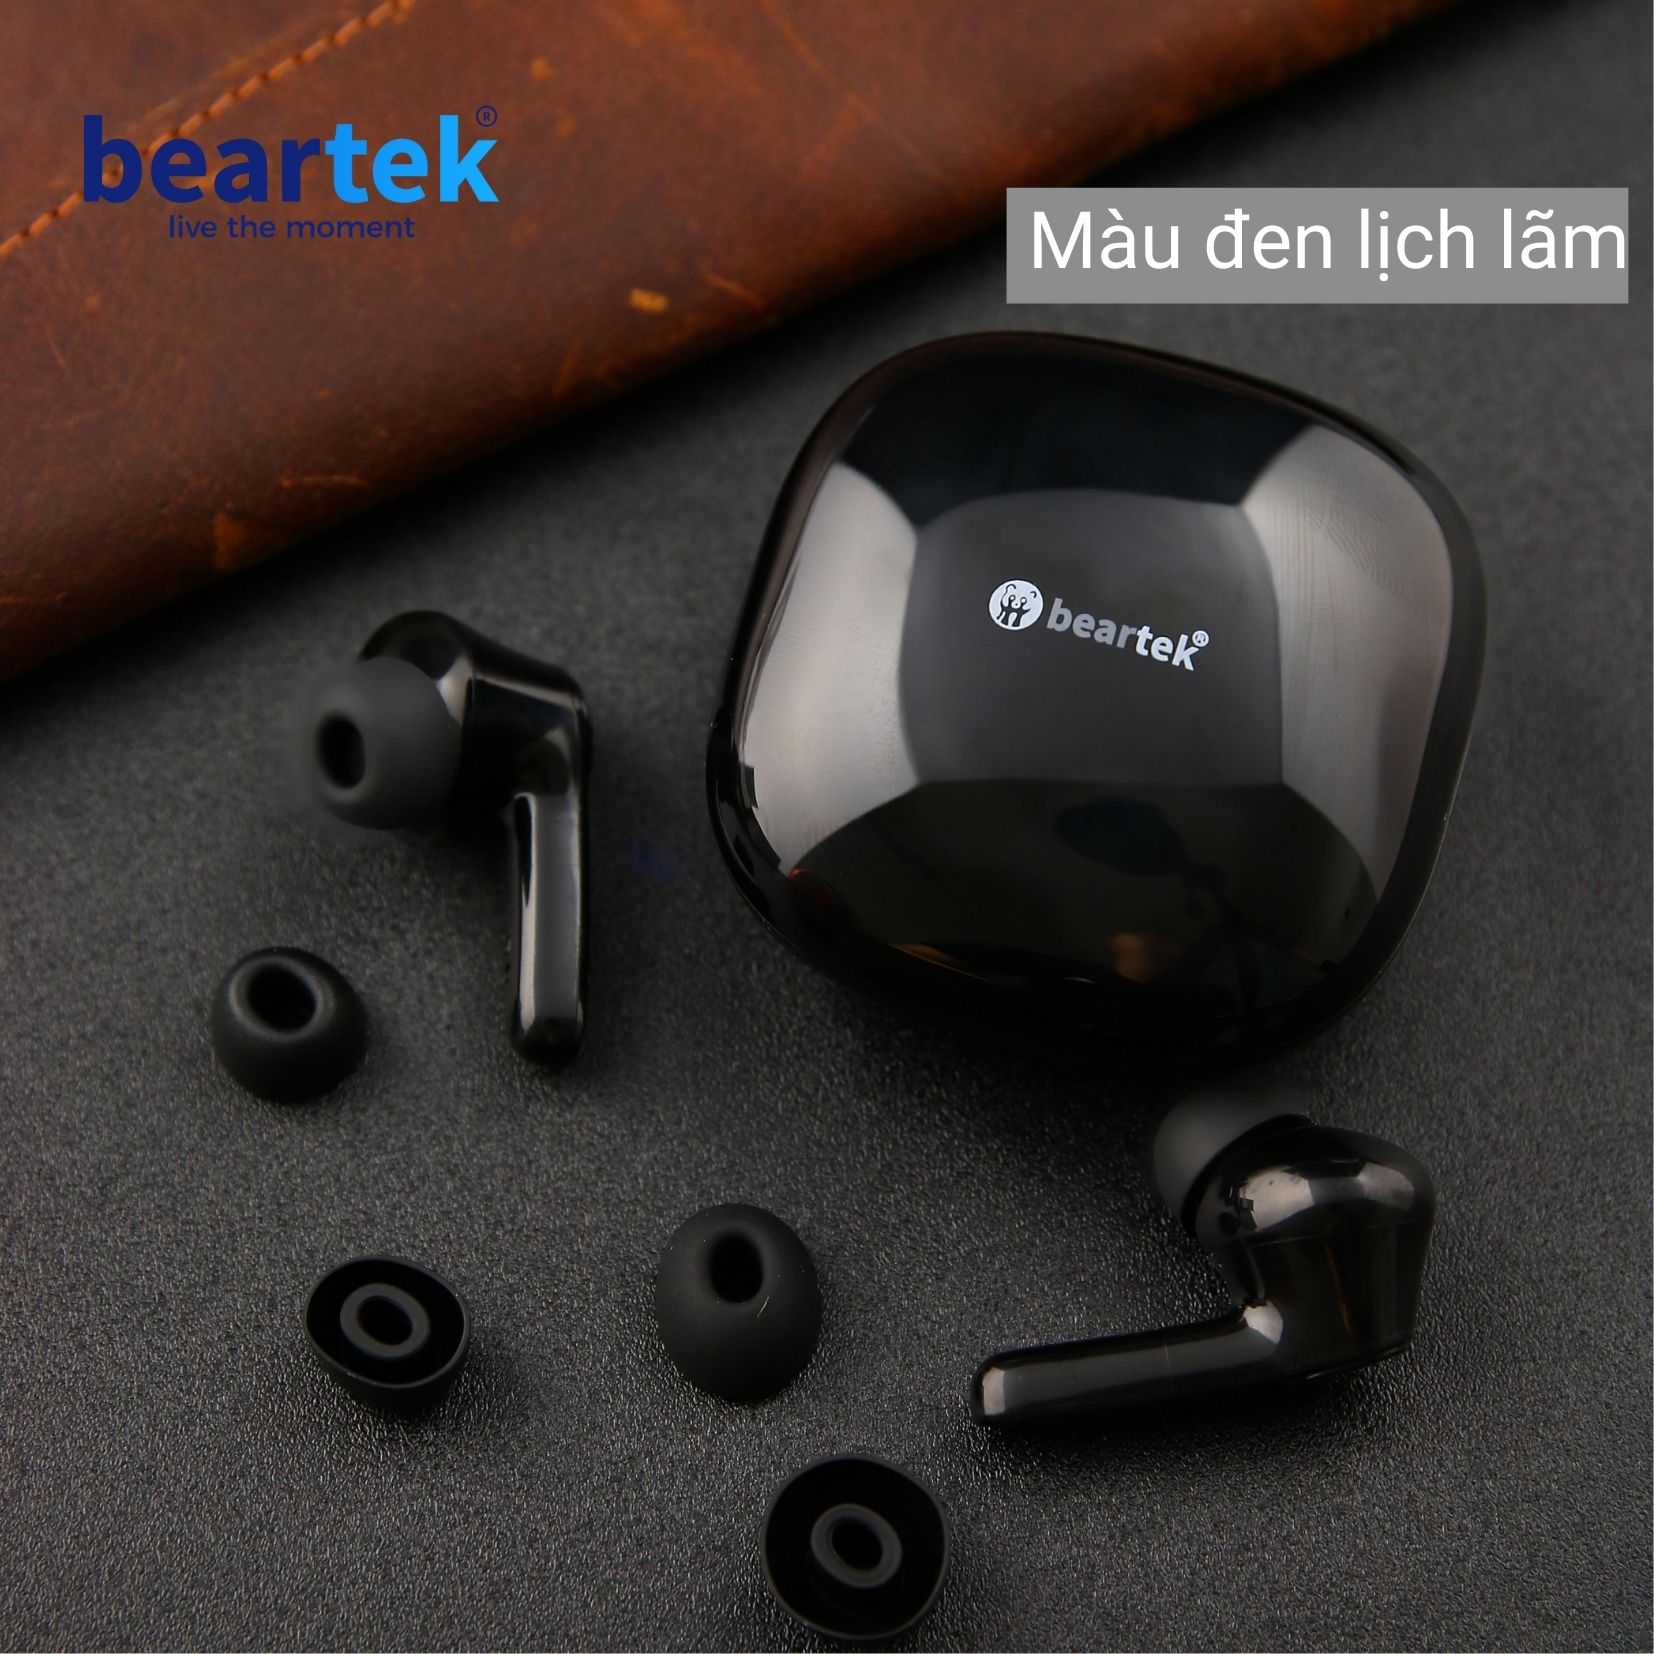 Tai nghe không dây Beartek Bearbud B33 – Cảm ứng dừng bật nhạc – Màn hình LED – Thiết kế thông minh giúp không bị đau tai khi sử dụng thời gian dài – Hàng nhập khẩu